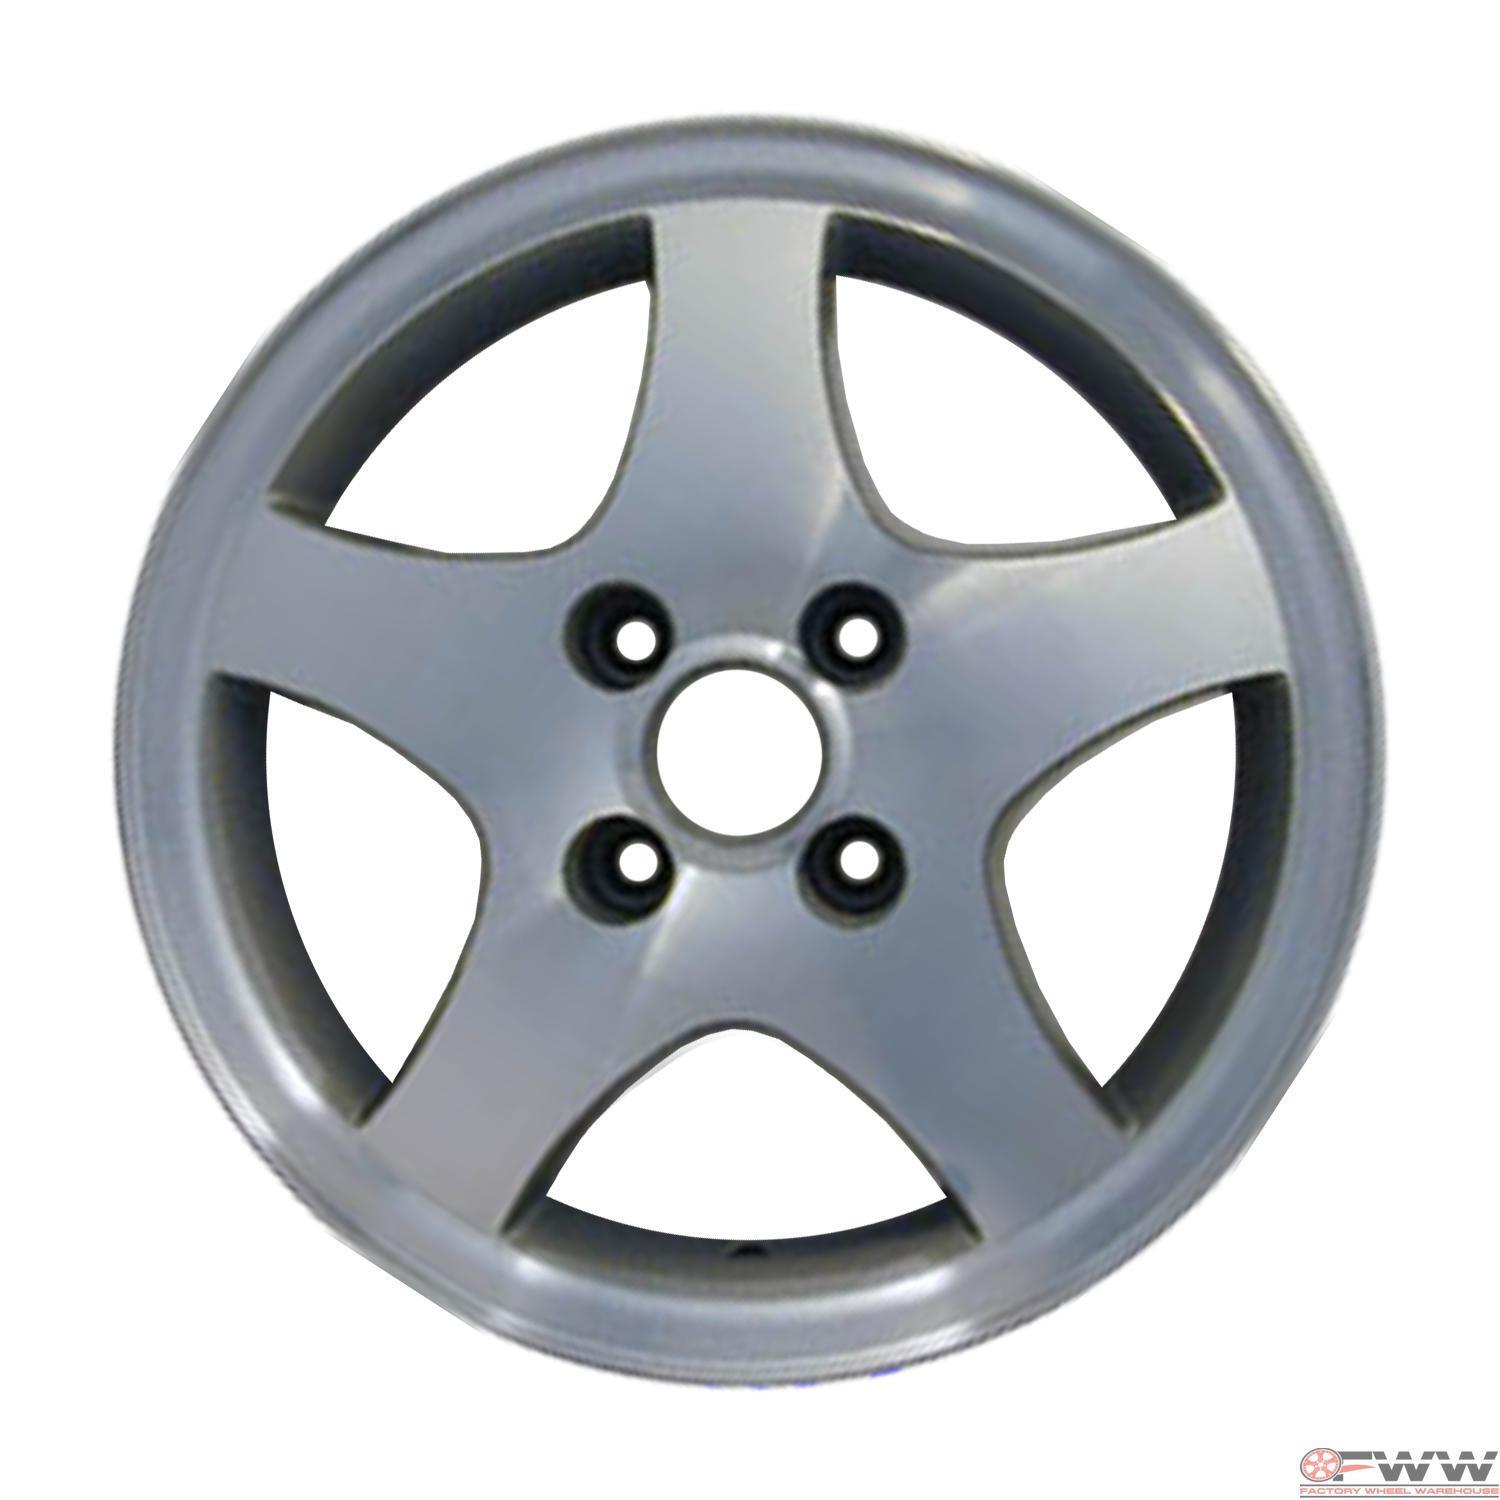 Volkswagen Cabrio Golf Wheel 1996-2002 14